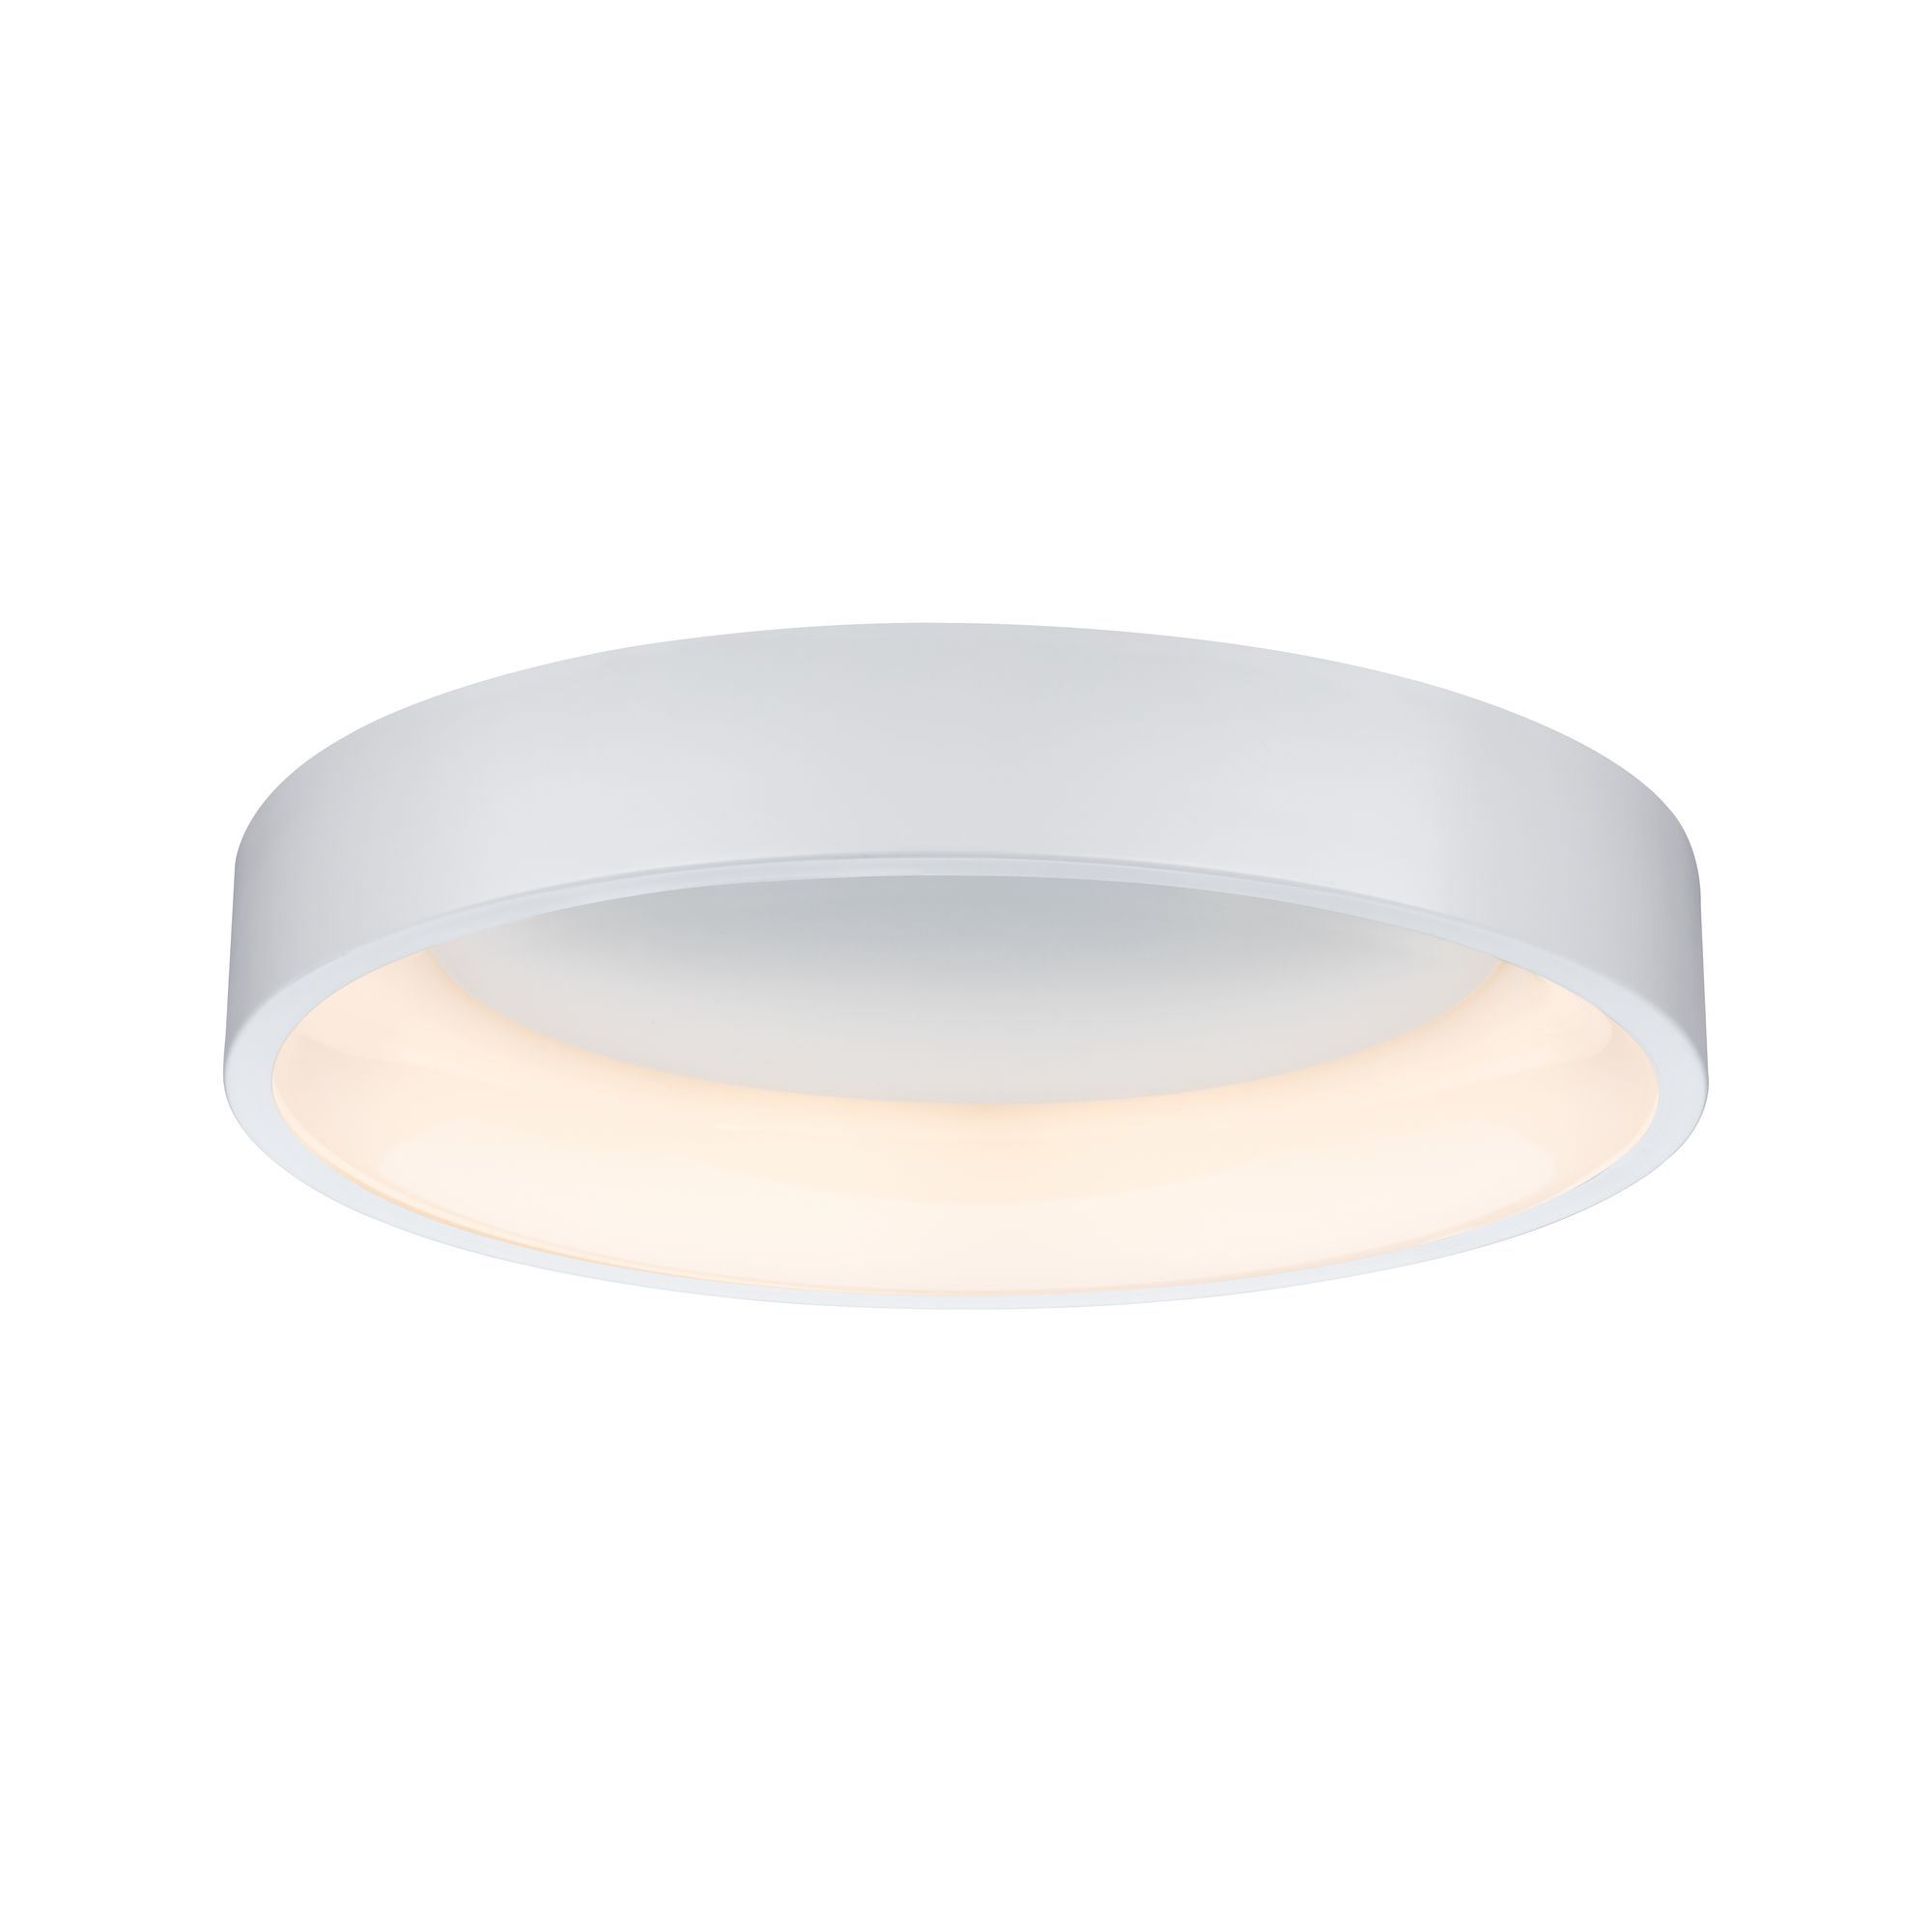 PAULMANN - LED stropní svítidlo Ardora 23,5W bílá stmívatelné, P 70906